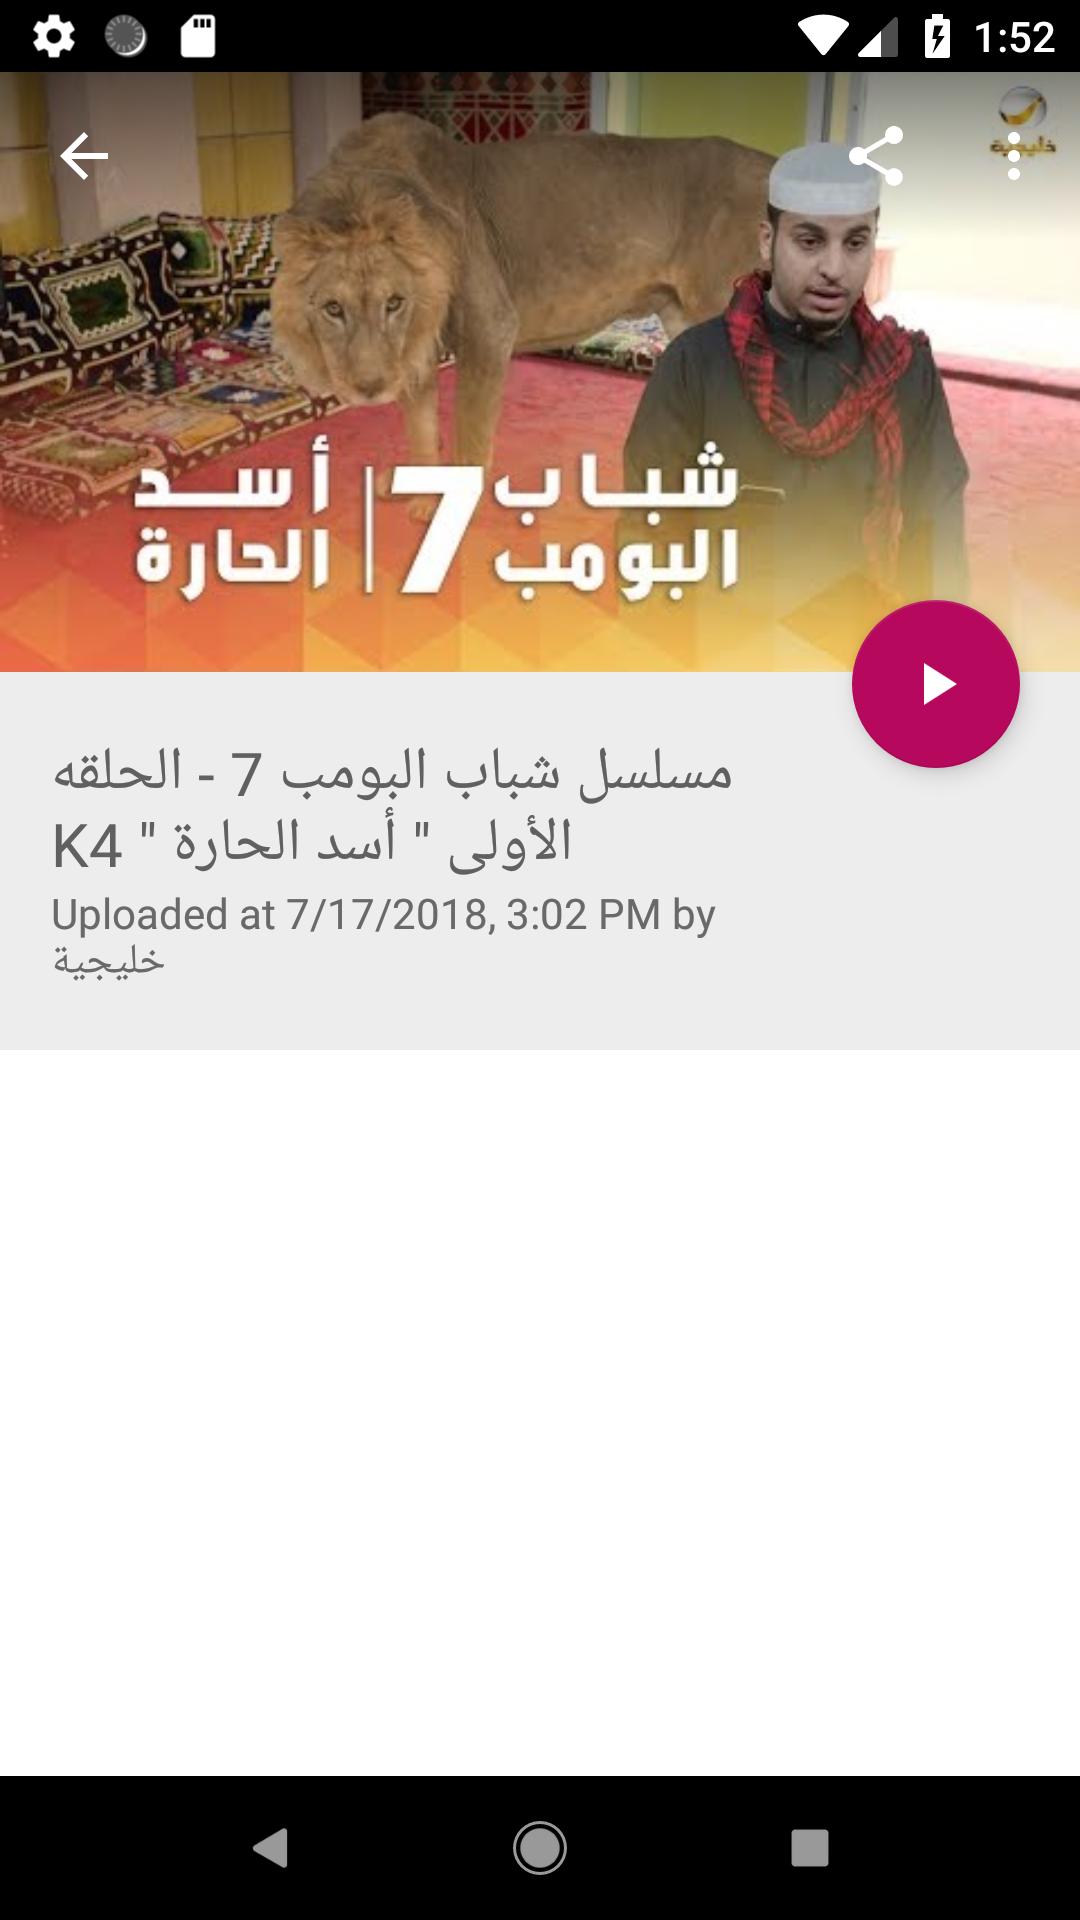 شباب البومب for Android - APK Download